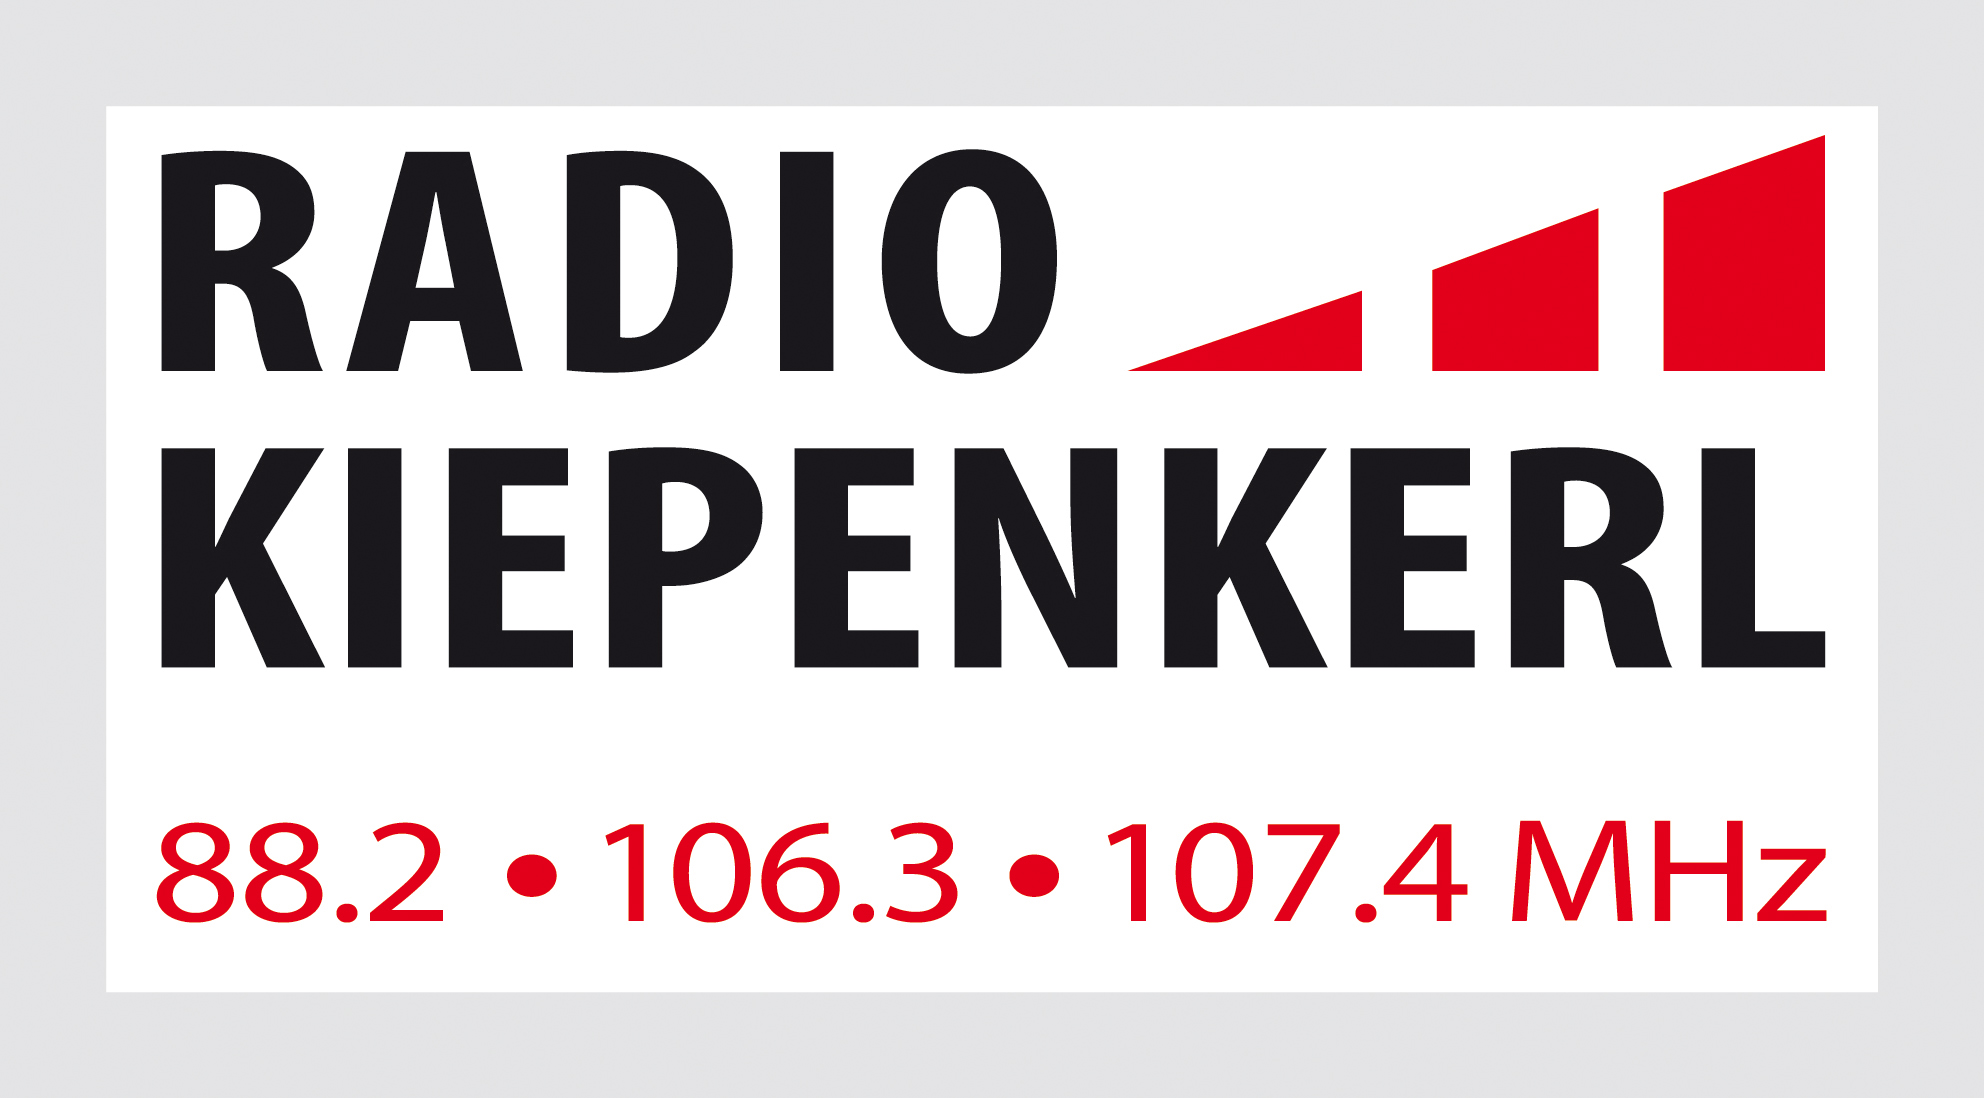 RADIO KIEPENKERL 88.2 106.3 107.4 MHz